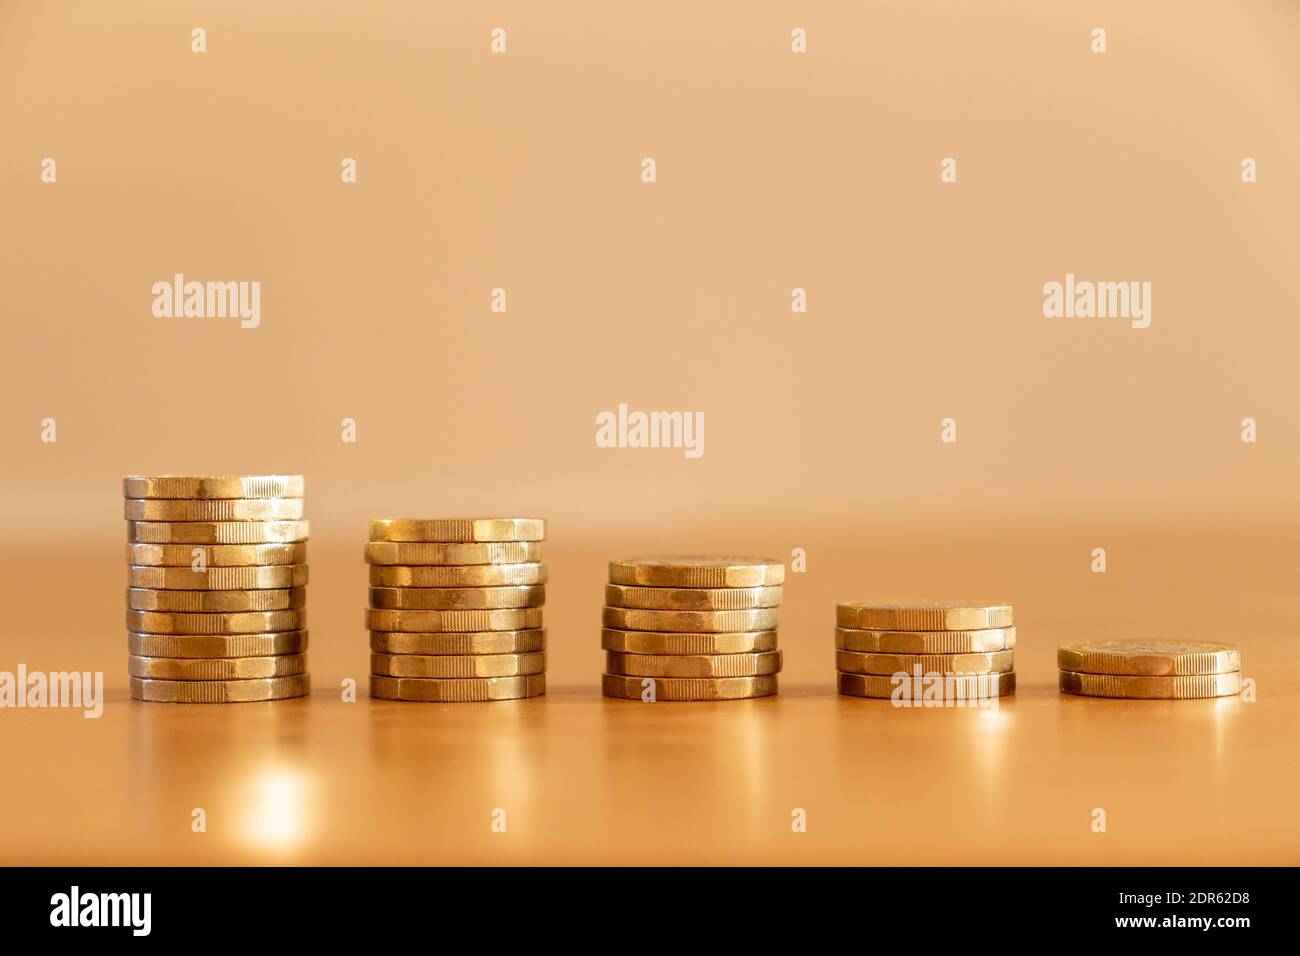 Gros plan de piles de plusieurs pièces de livre sterling de taille décroissante comme argent descendant symbolisant les effets de l'inflation, Royaume-Uni Banque D'Images